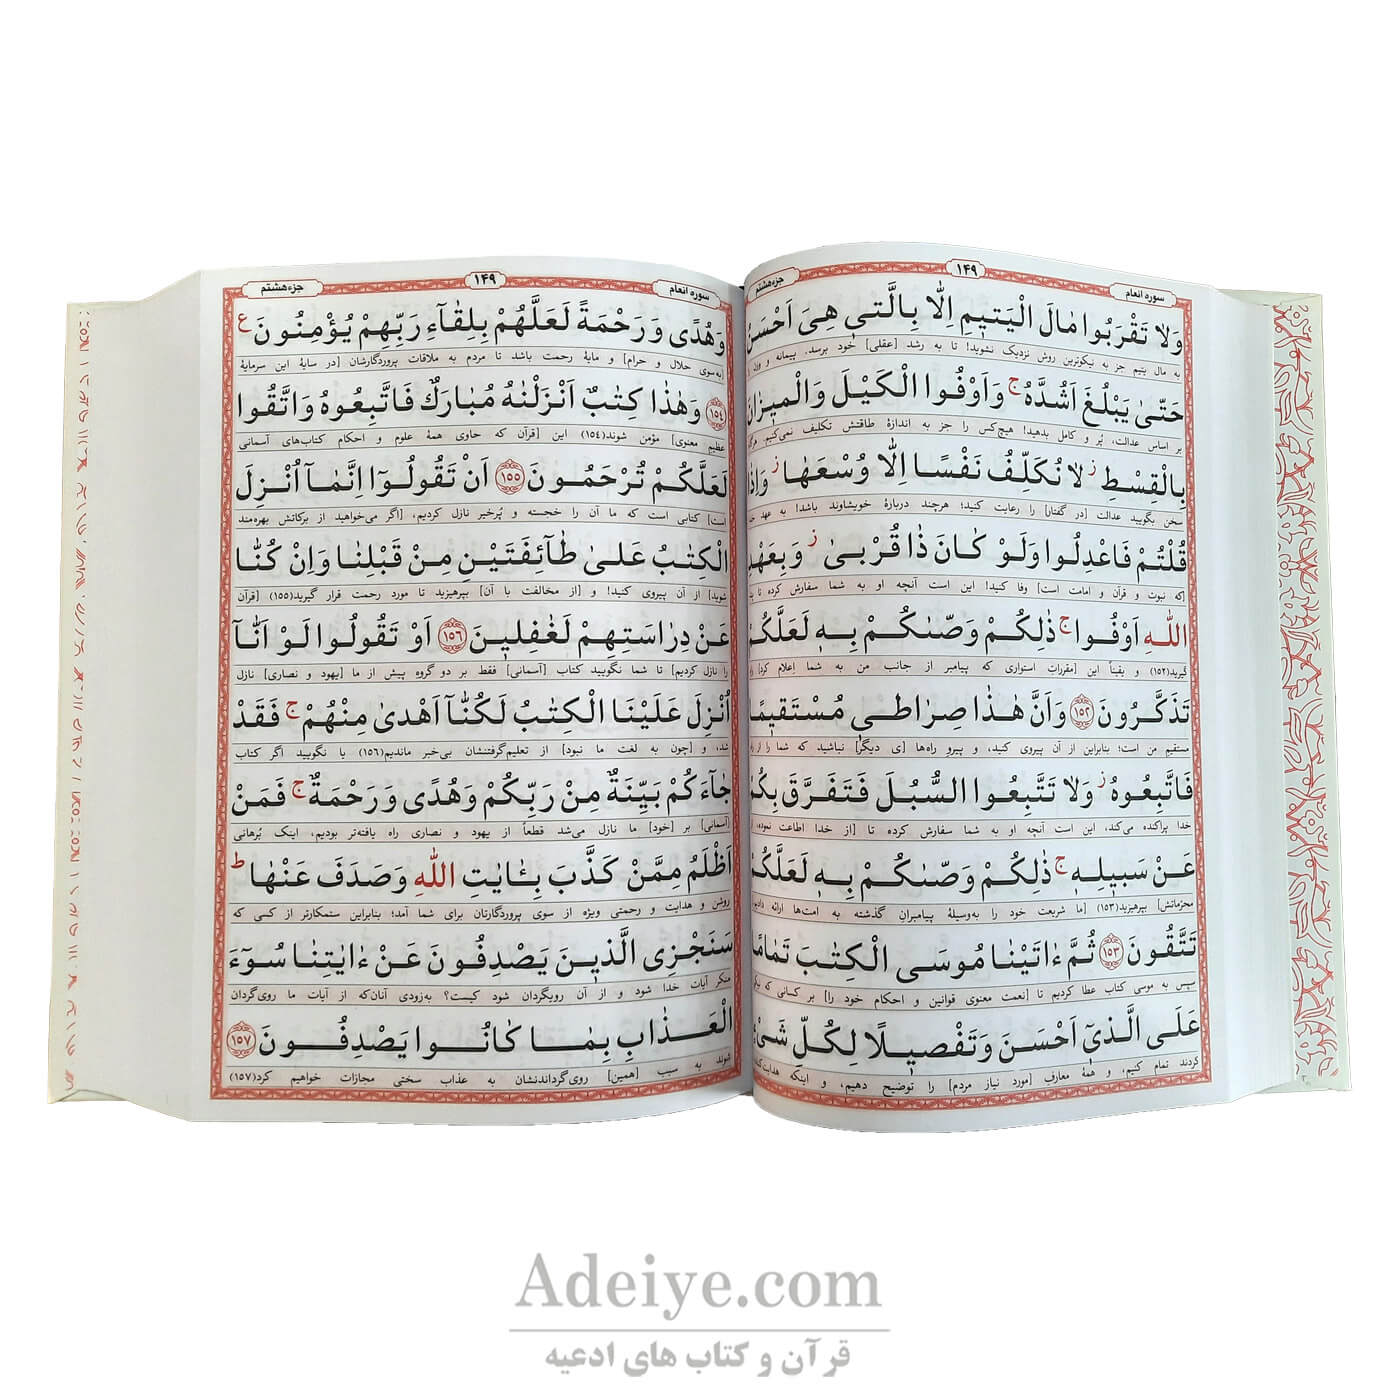 قرآن درشت خط کامپیوتری 120 صفحه ای درشت خط و خوانا